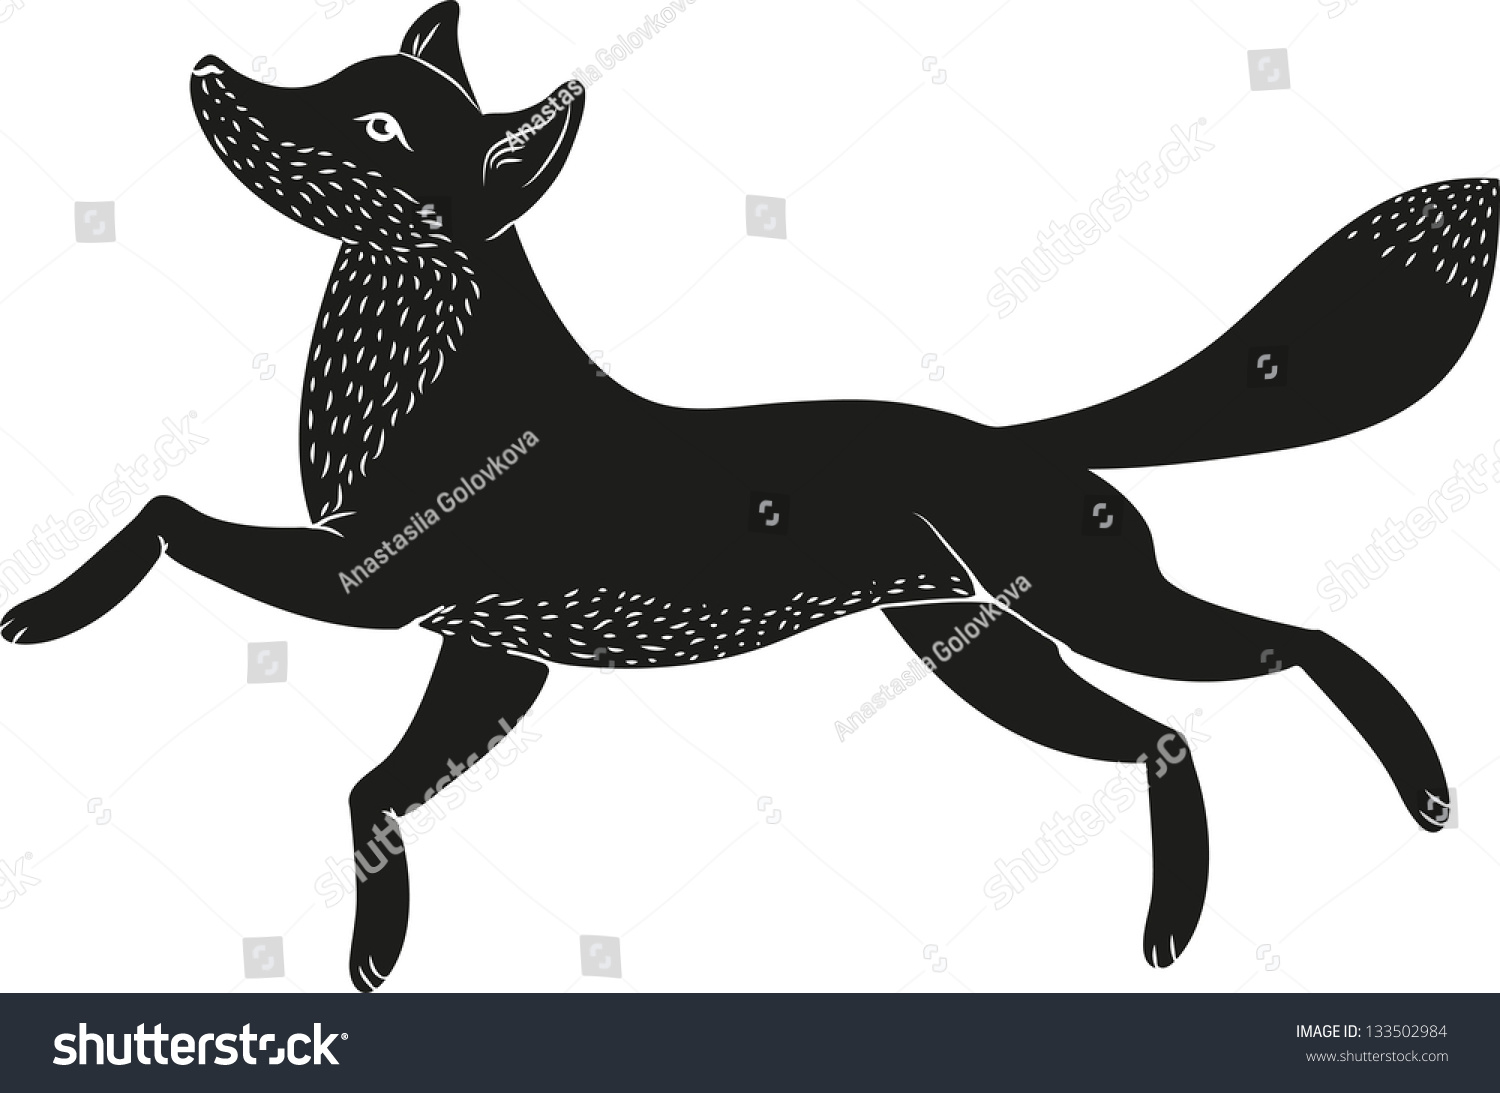 Black Fox Stock Vector Illustration 133502984 : Shutterstock